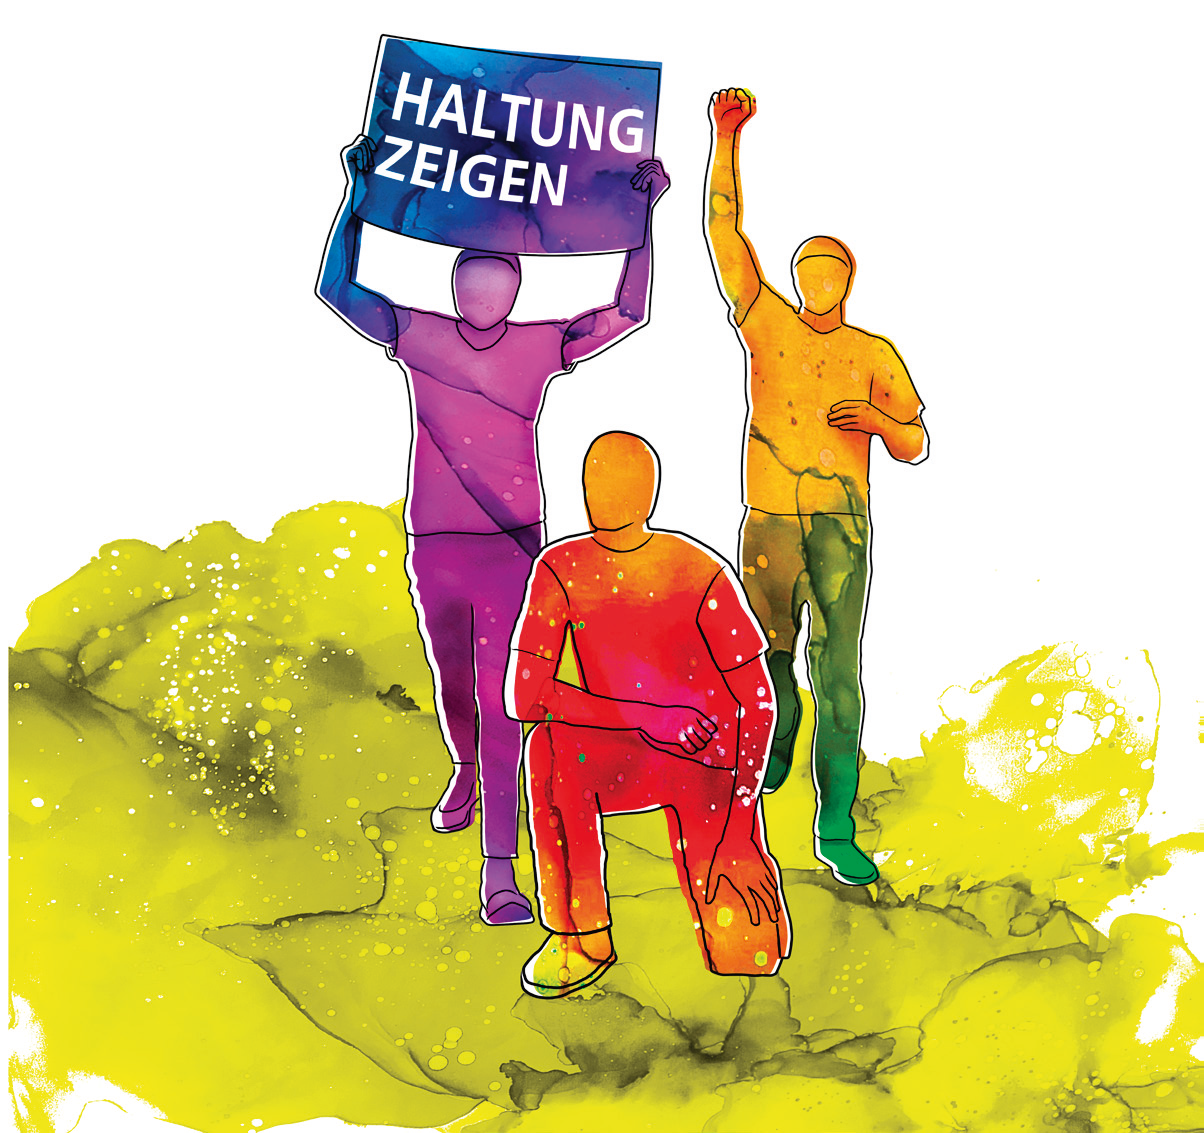 Haltung zeigen (c) stiftung-gegen-rassismus.de